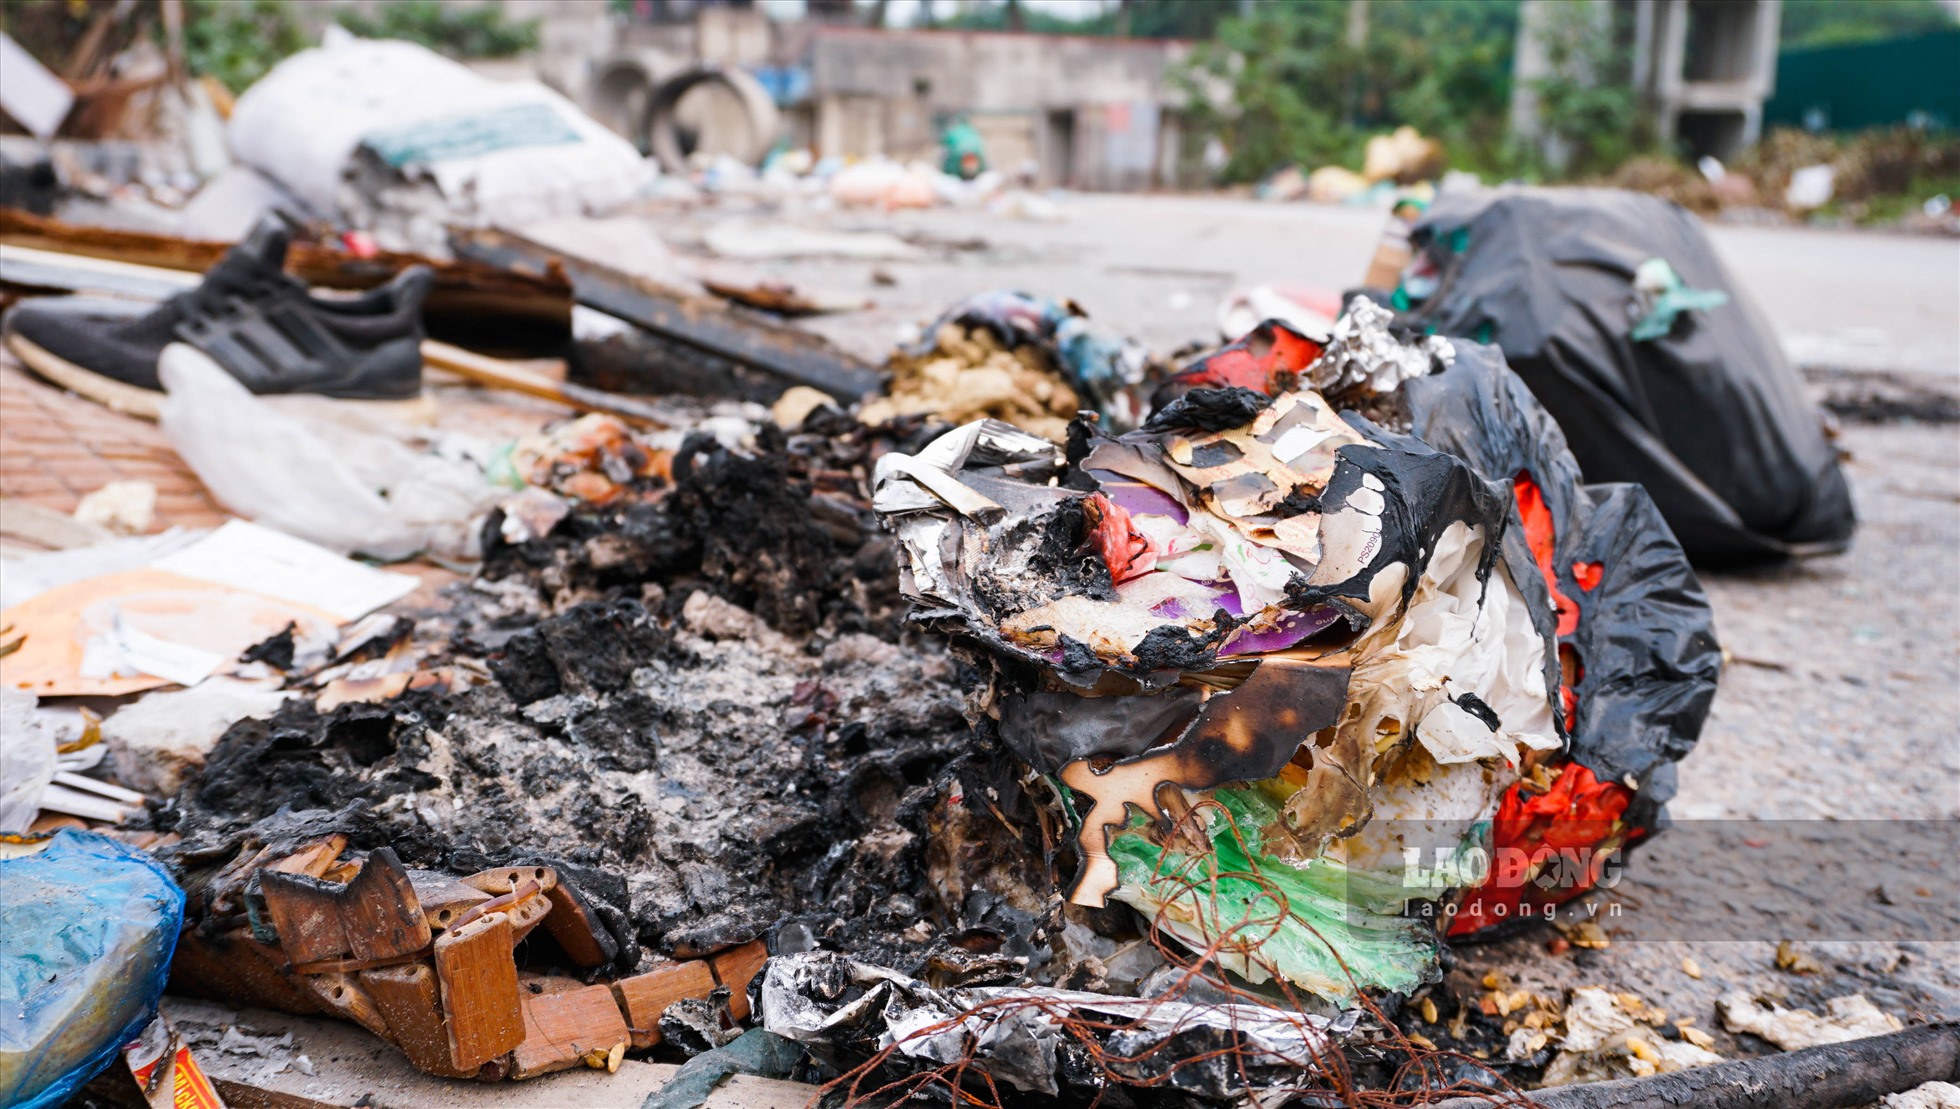 Tình trạng đốt rác thải cũng xảy ra thường xuyên tại đây. Khói bụi đi kèm với mùi hôi nồng nặc từ việc đốt rác khiến môi trường tại đây bị ô nhiễm trầm trọng. Điều này, ảnh hưởng trực tiếp đến sức khỏe của người dân sống quanh khu vực.